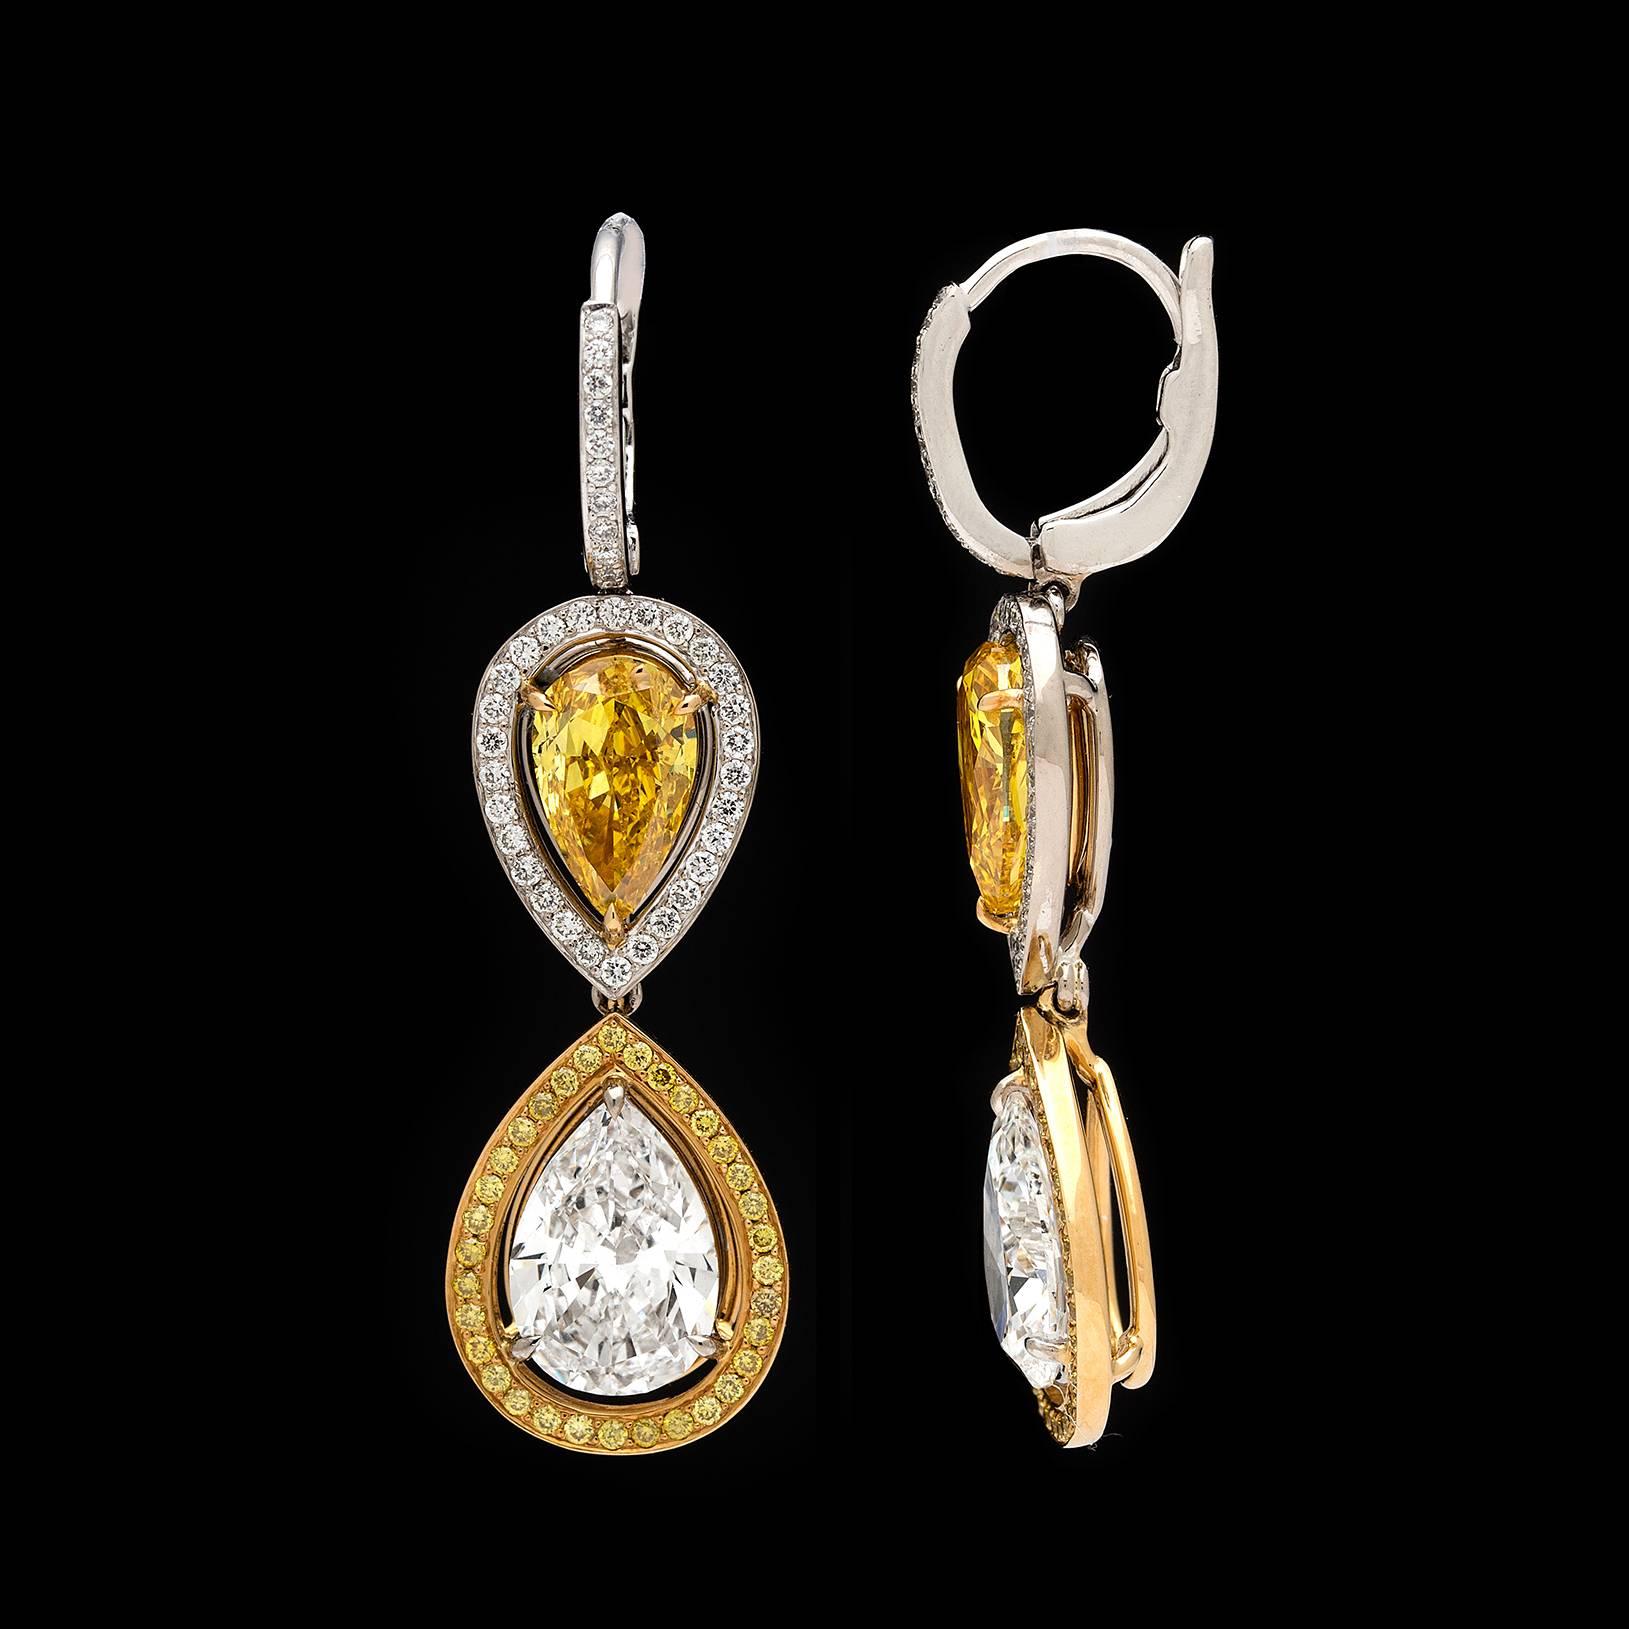 Boucles d'oreilles en or blanc et jaune d'une qualité incroyable 1. Chacune d'entre elles présente un diamant poire GIA de 1,01 carat de couleur Fancy Vivid Yellow et de 1,11 carat de couleur Fancy Vivid Orangy Yellow, entouré de diamants ronds de